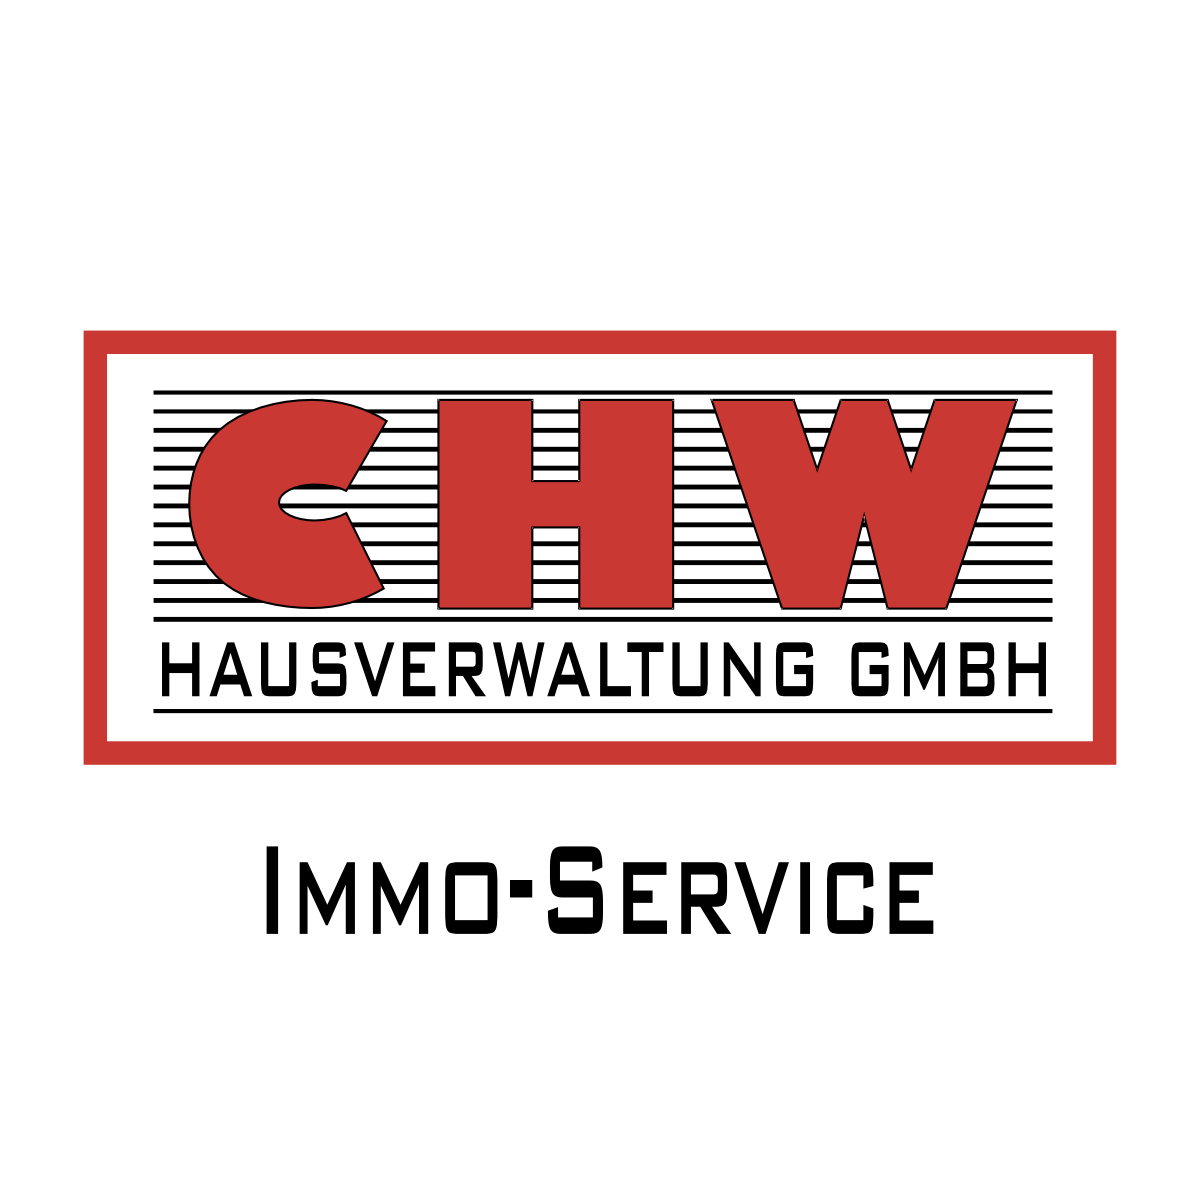 CHW Hausverwaltung GmbH